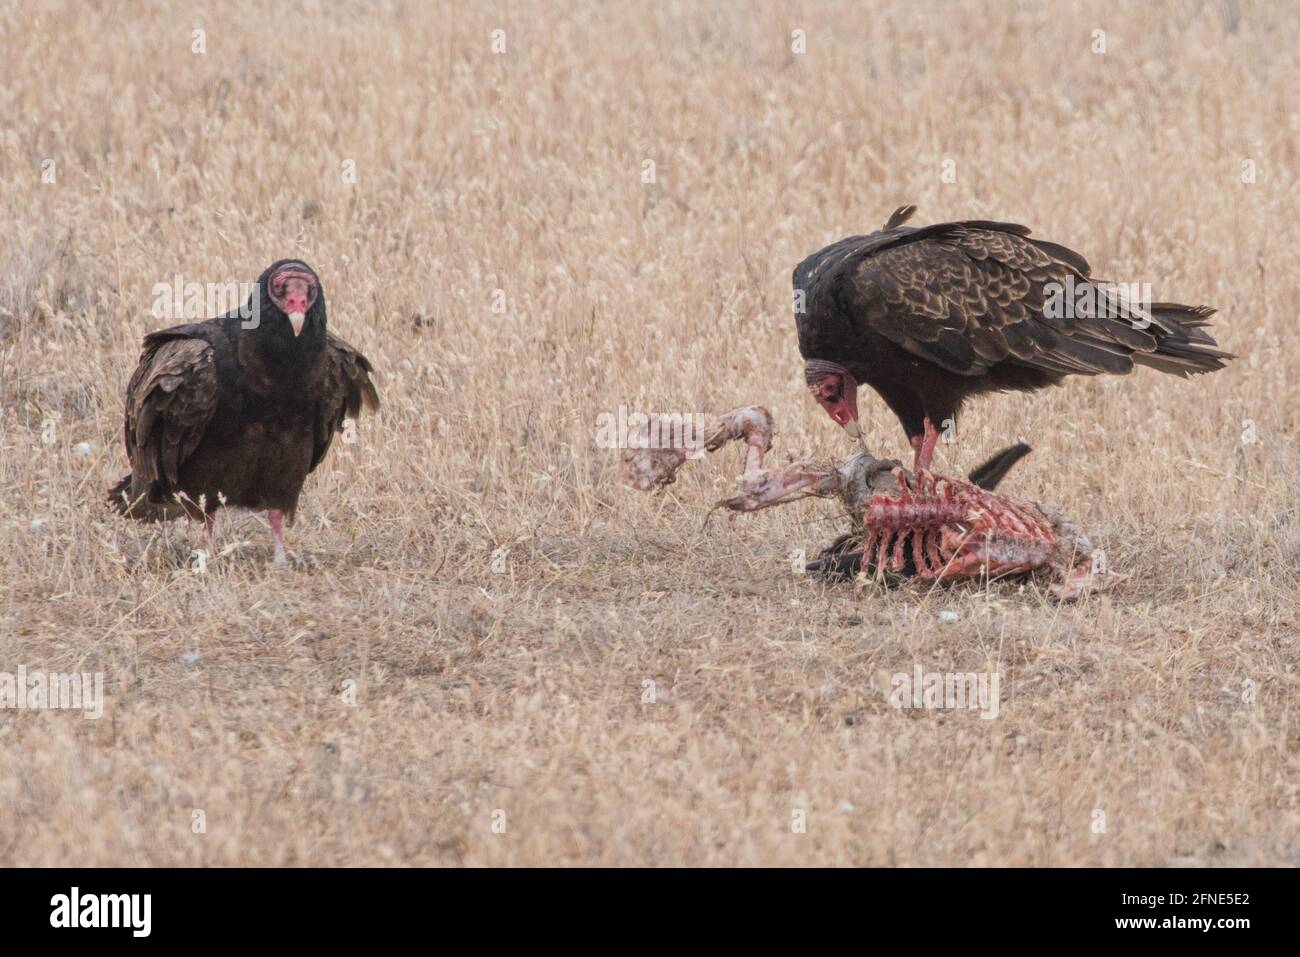 Une paire de vautours de dinde (Cathartes aura) récupère un animal mort dans une région aride de Californie. Banque D'Images